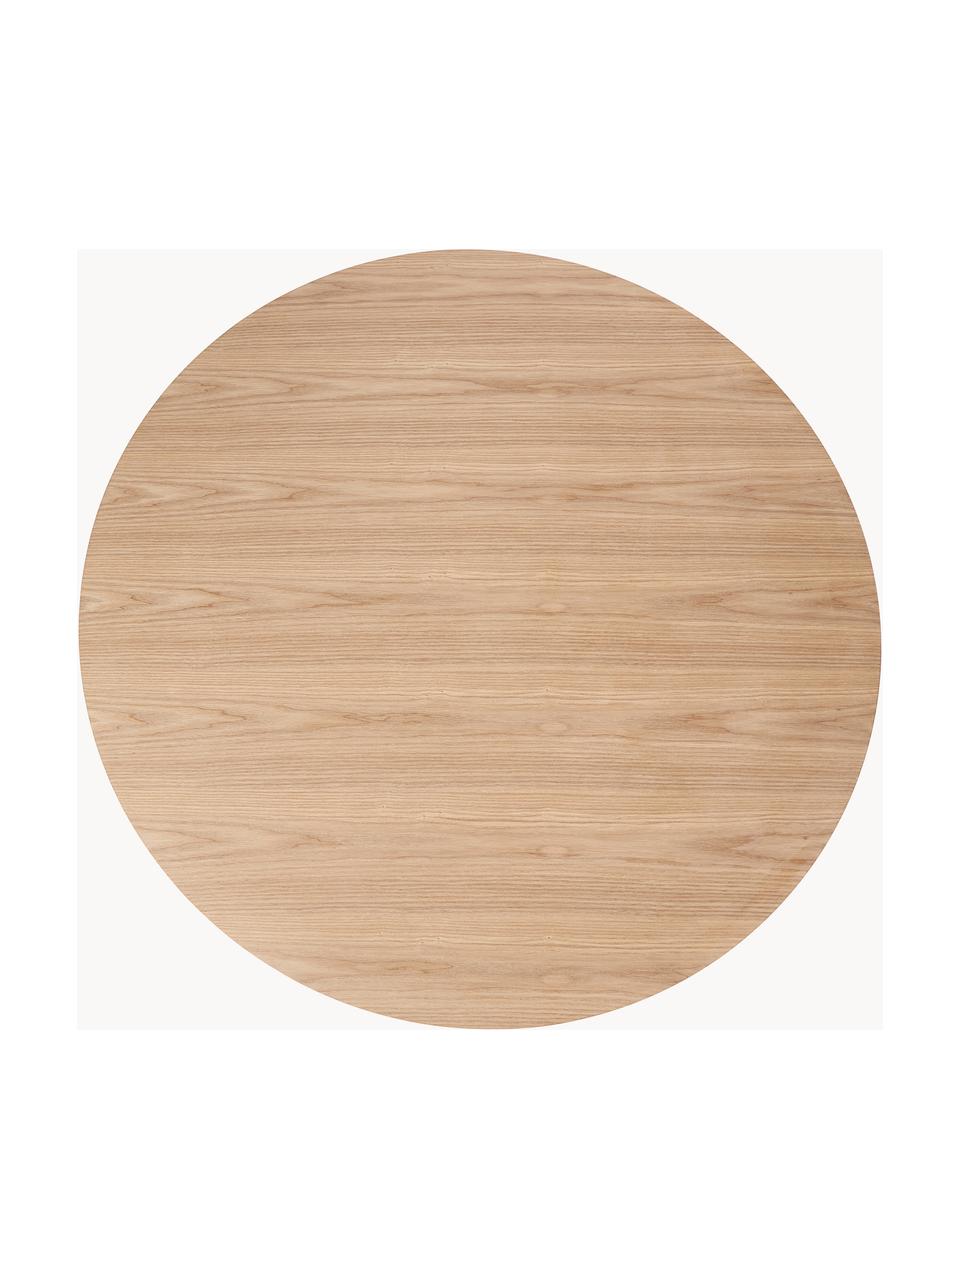 Okrągły stół do jadalni Menorca, Ø 100 cm, Blat: fornir z drewna jesionowe, Noga: metal malowany proszkowo, Drewno jesionowe, biały, Ø 100 cm